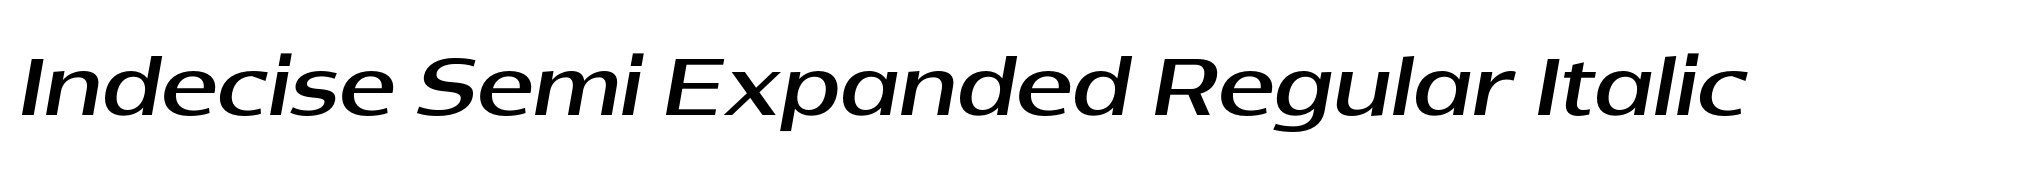 Indecise Semi Expanded Regular Italic image